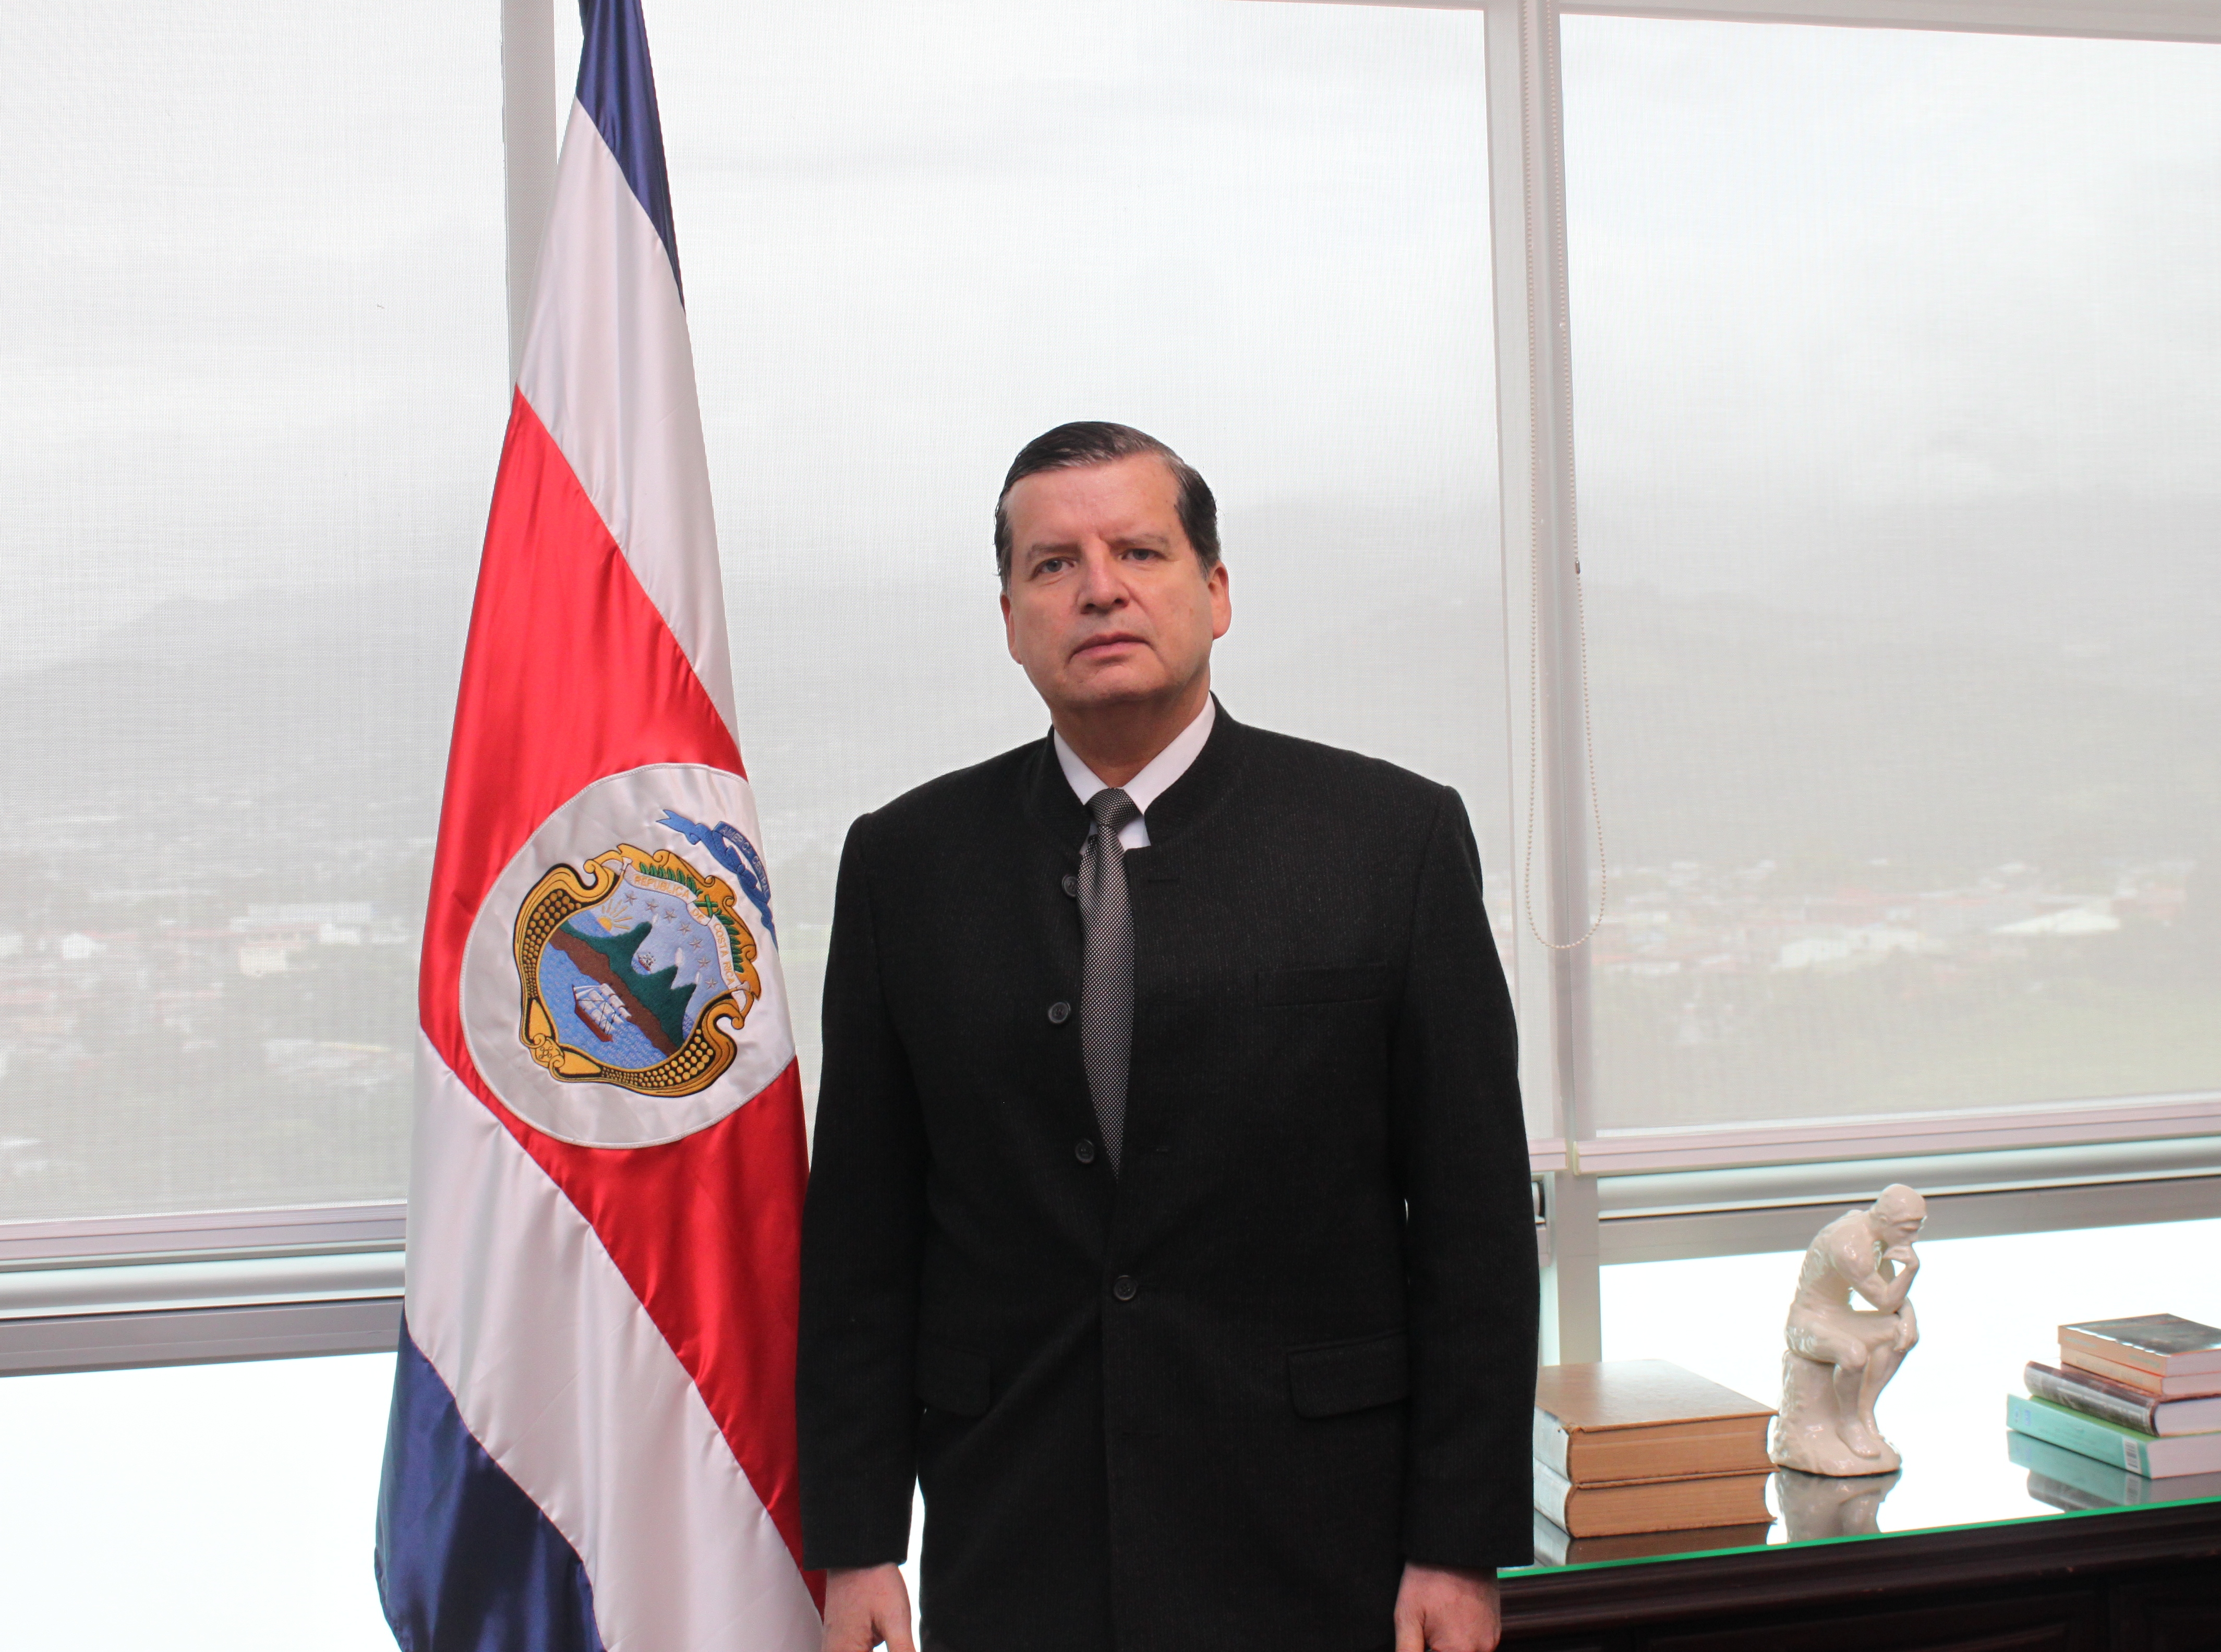 Magistrado Jorge Araya García, de pie, posa para la fotografía junto a la bandera de Costa Rica